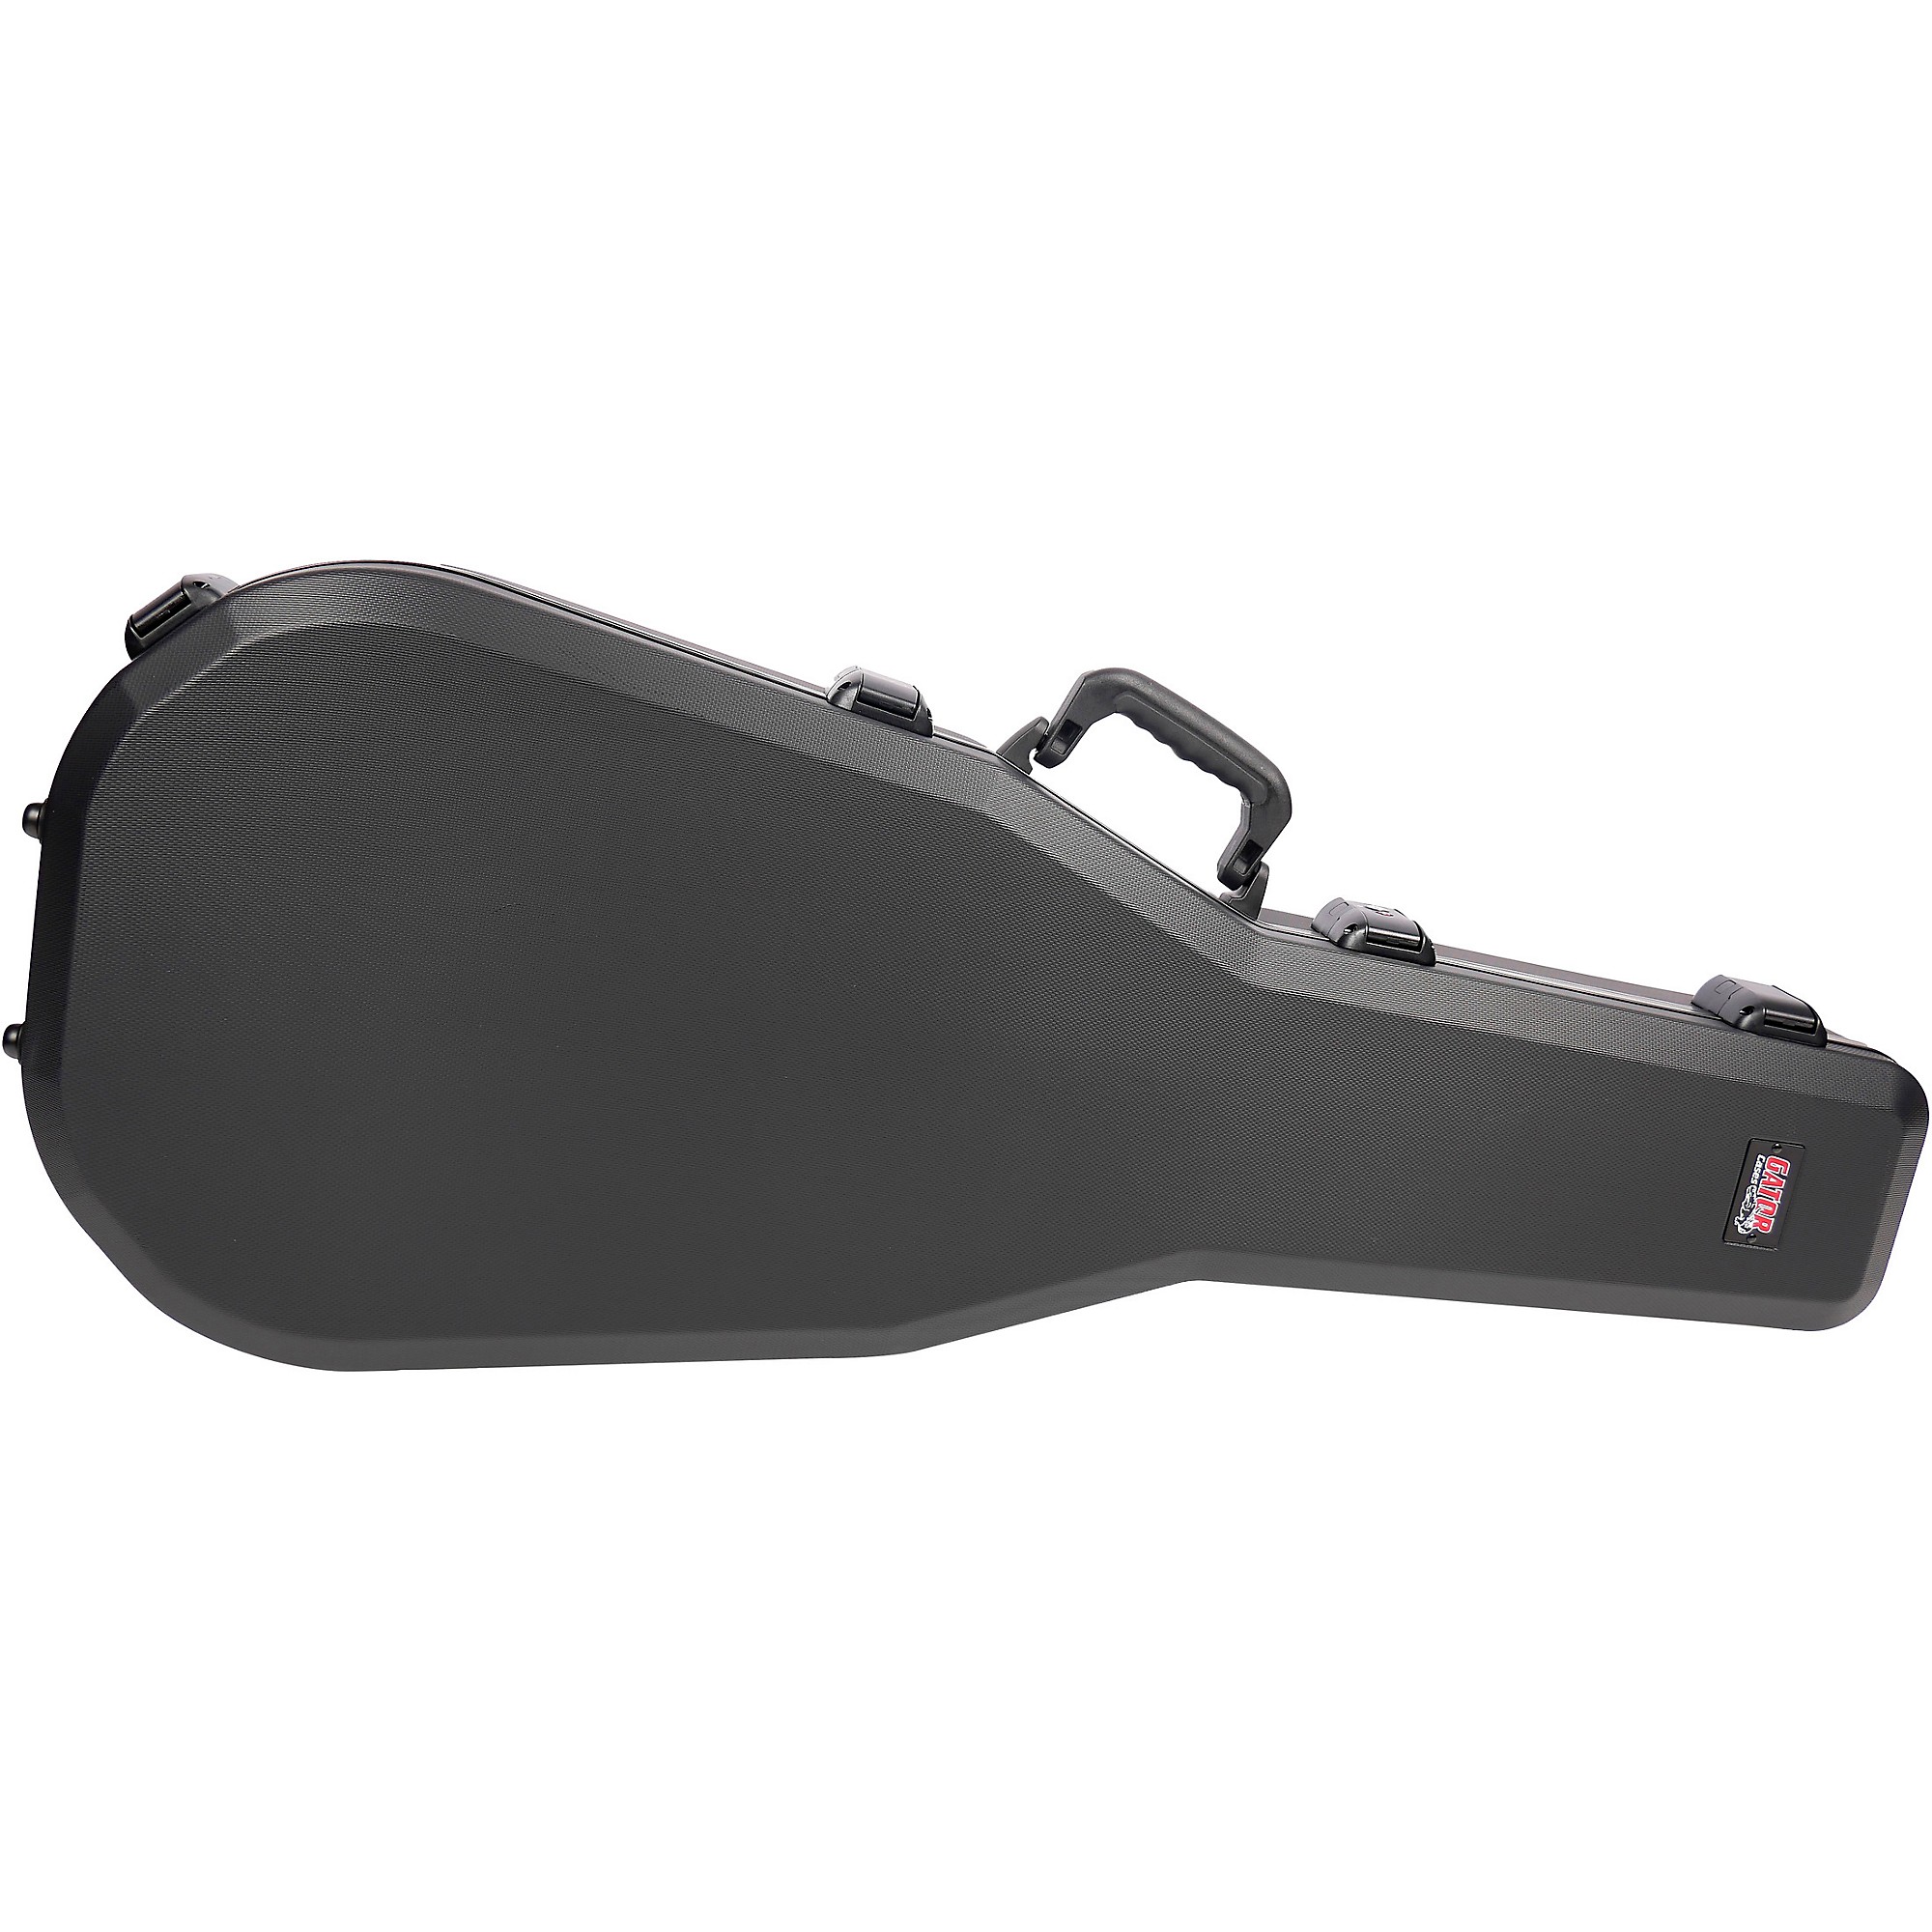 Gator TSA Series ATA Molded Acoustic Guitar Case Black